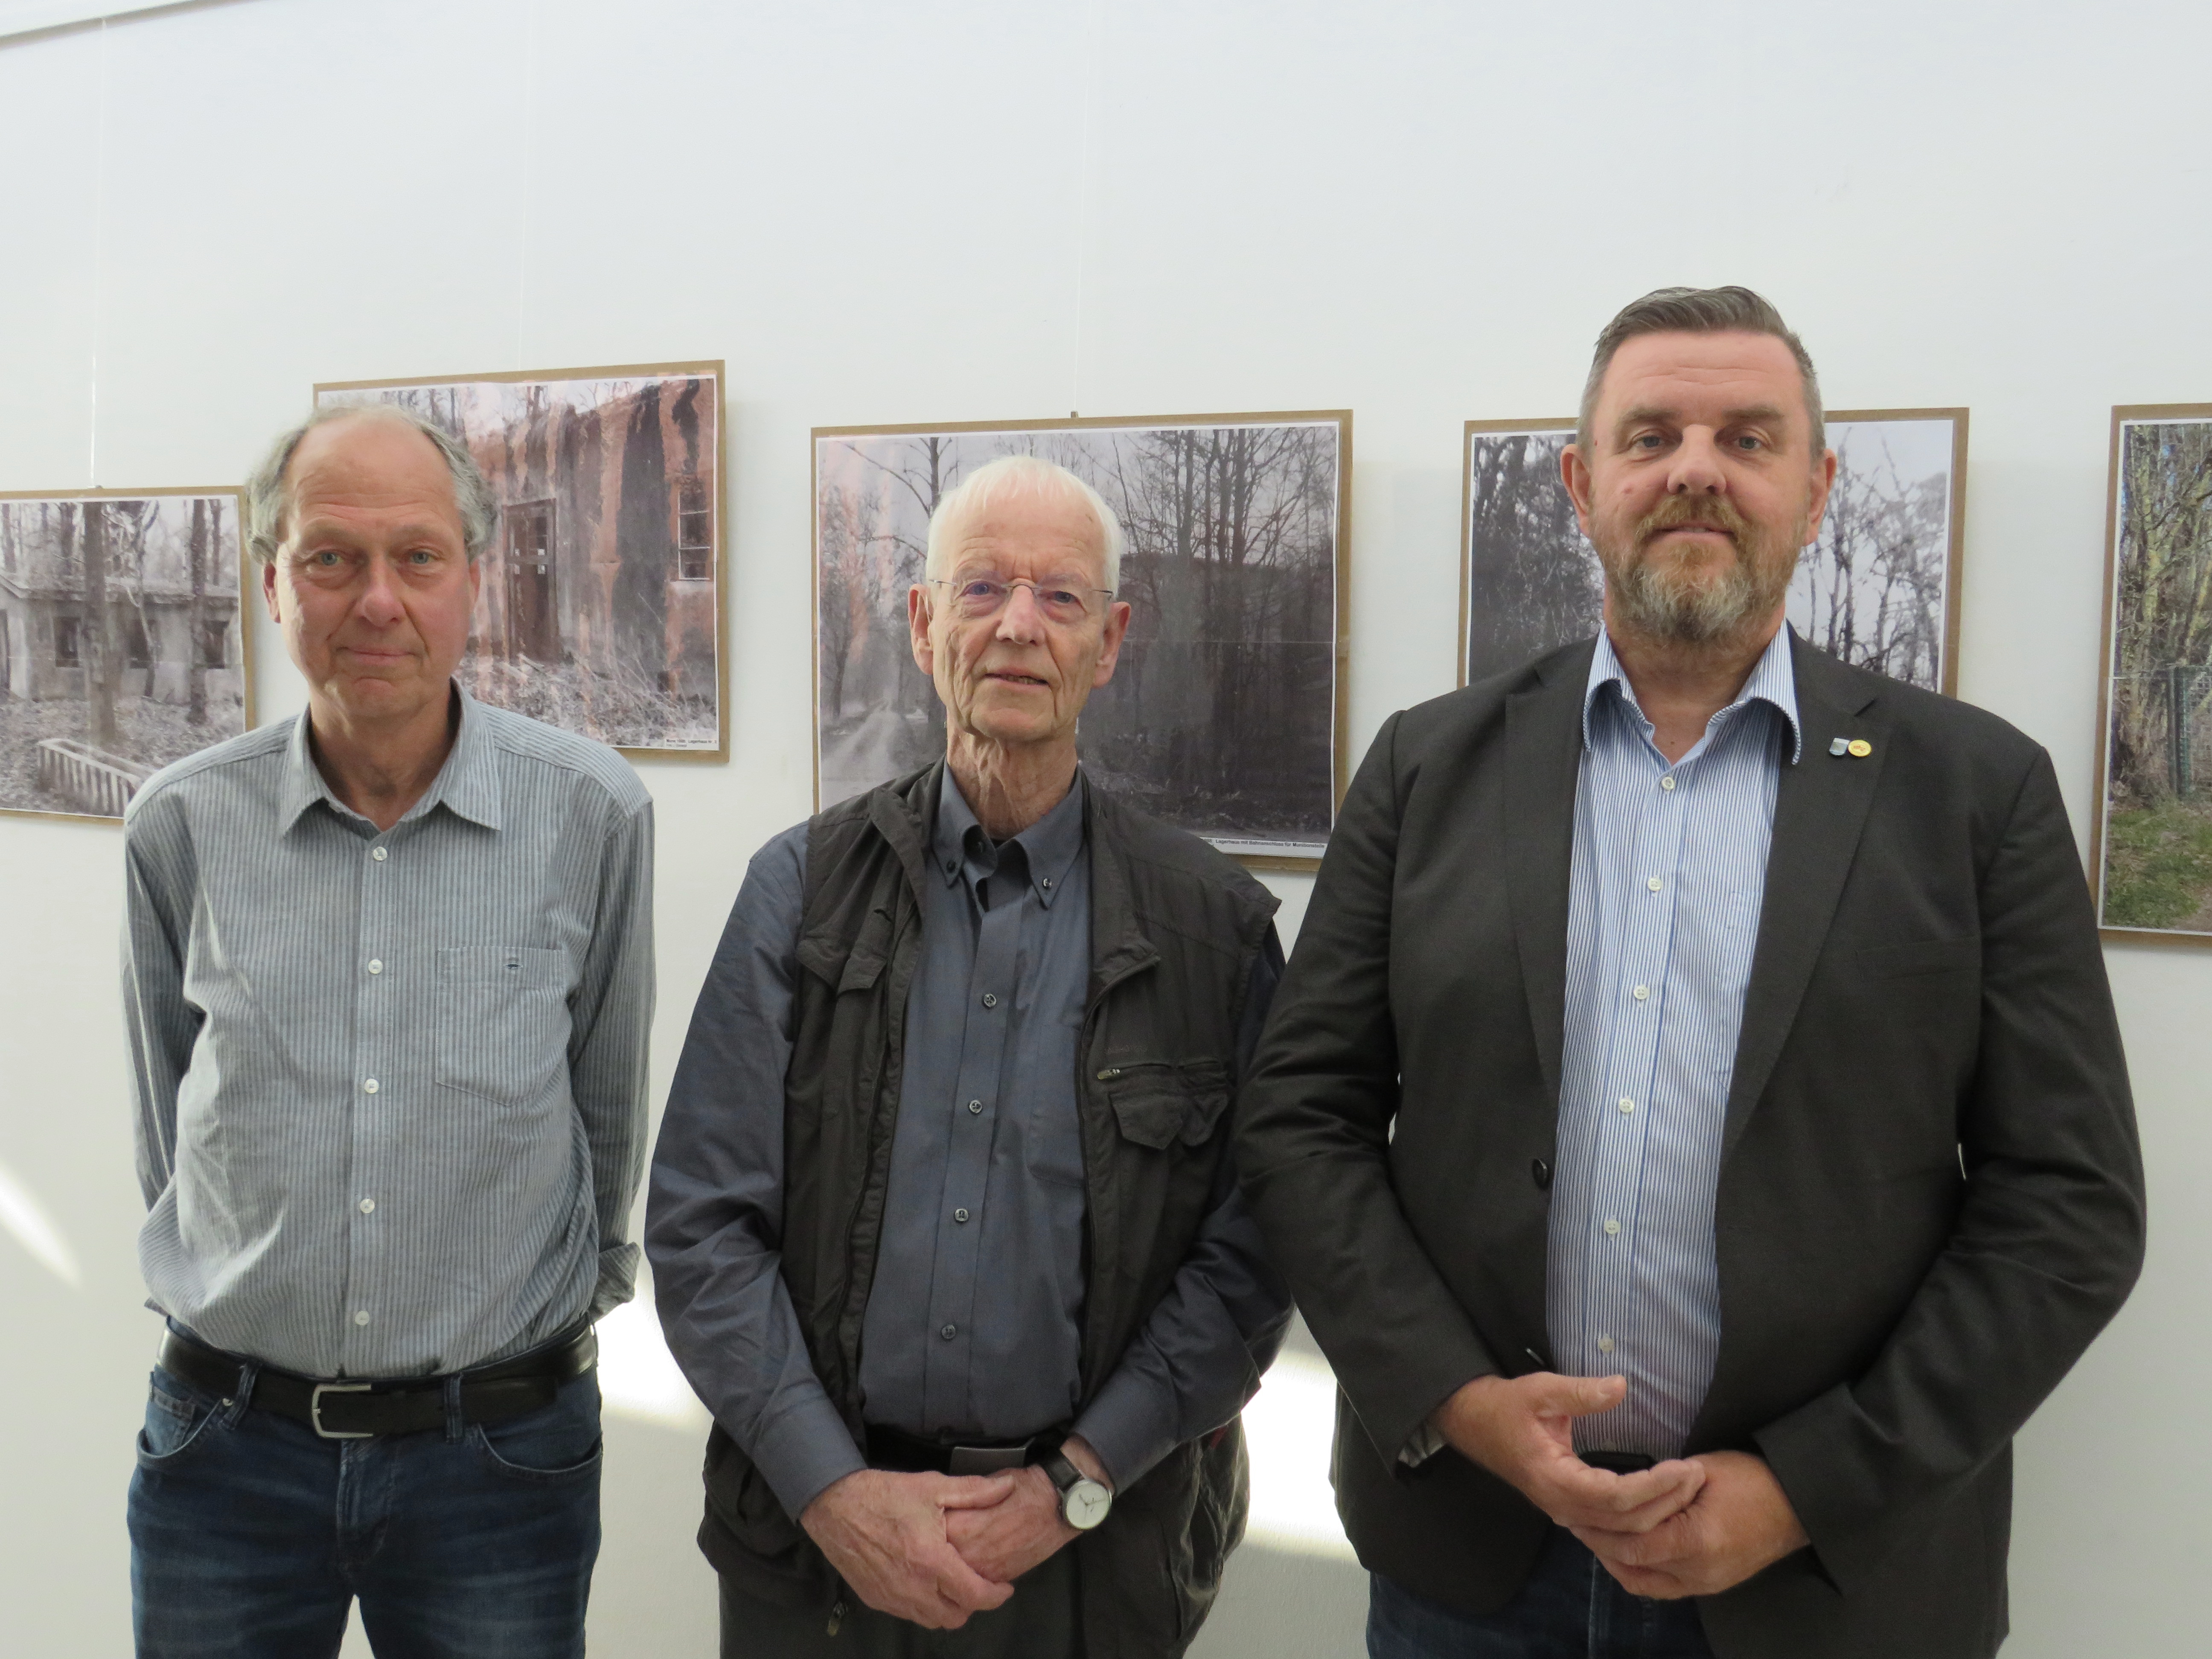 Foto (© Gemeinde Lehre): Uwe Otte, Jens Dürrkopf und Gemeindebürgermeister Andreas Busch bei der ERöffnung der neuen Fotoausstellung im Rathaus.